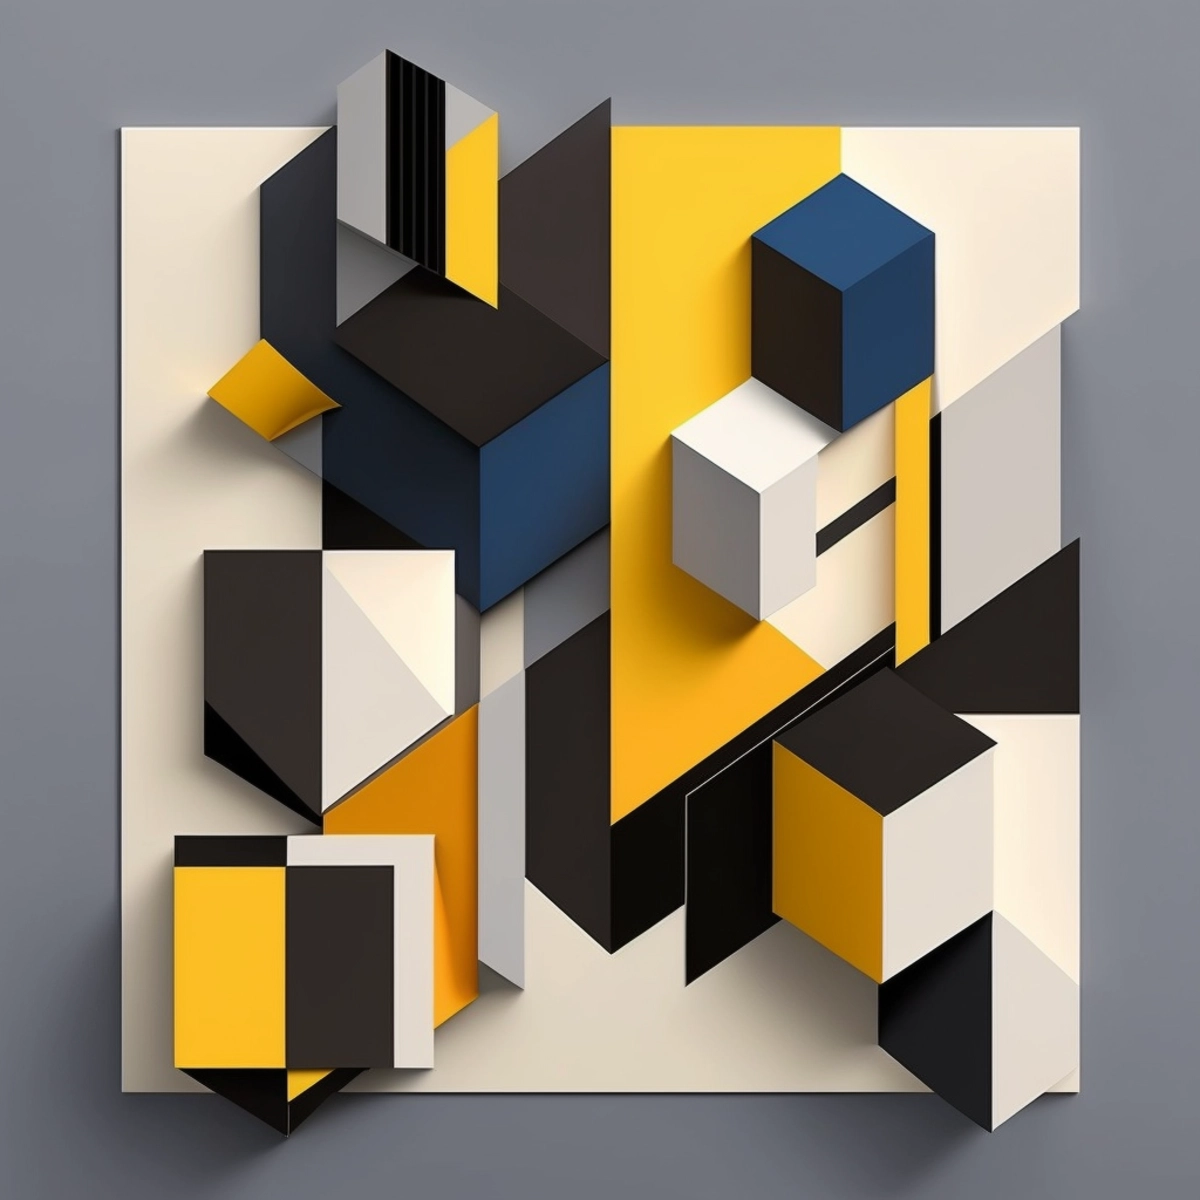 Una composición geométrica y minimalista con líneas que se cruzan y formas simples, en una paleta de colores atrevida y de alto contraste.